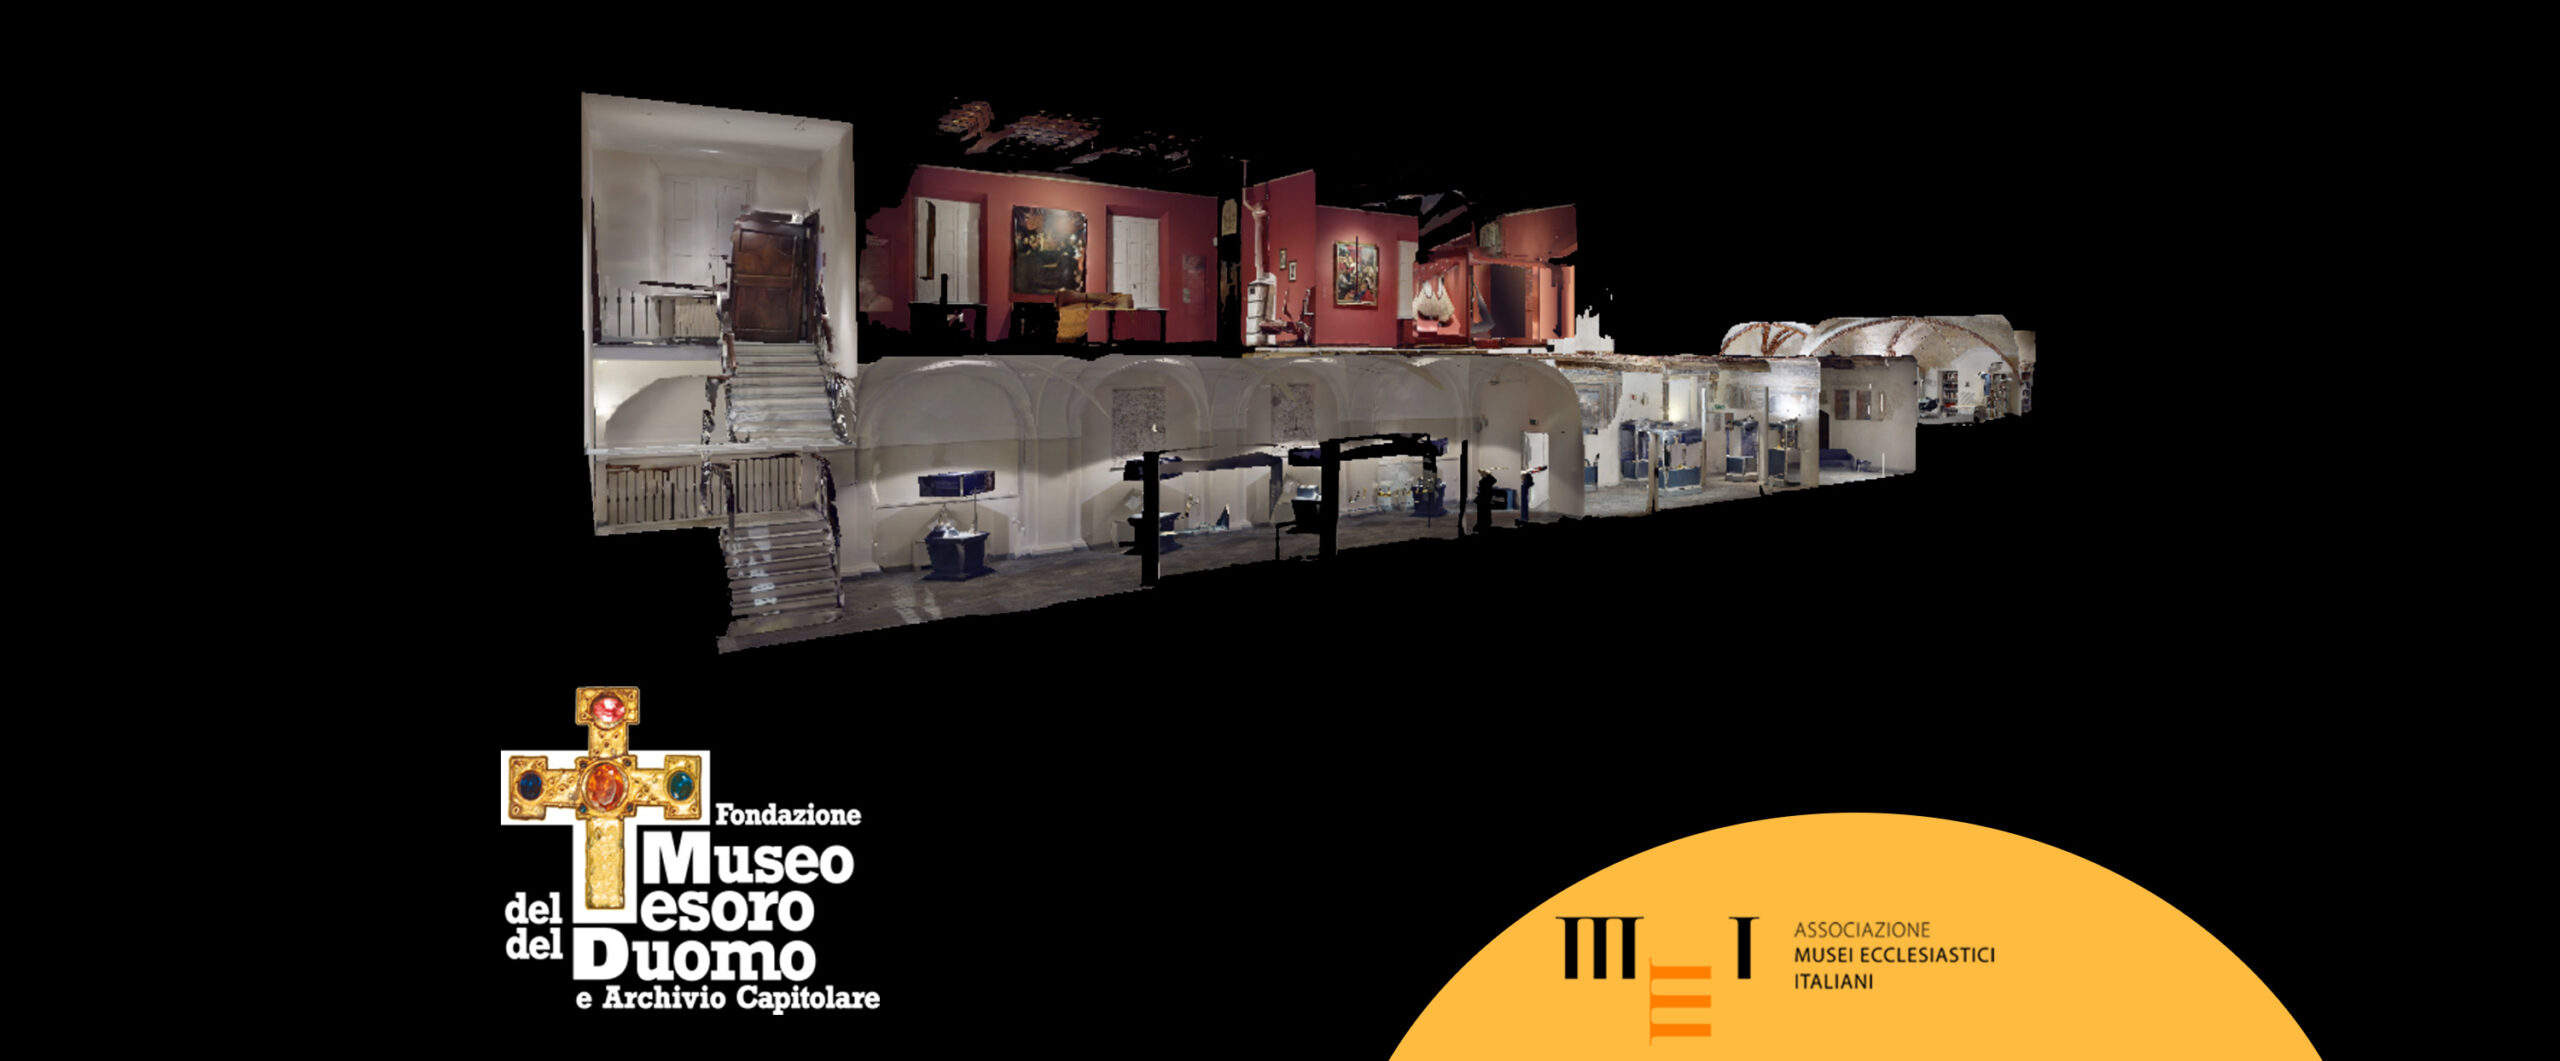 Il Museo del Tesoro del Duomo di Vercelli ora è interamente visitabile online